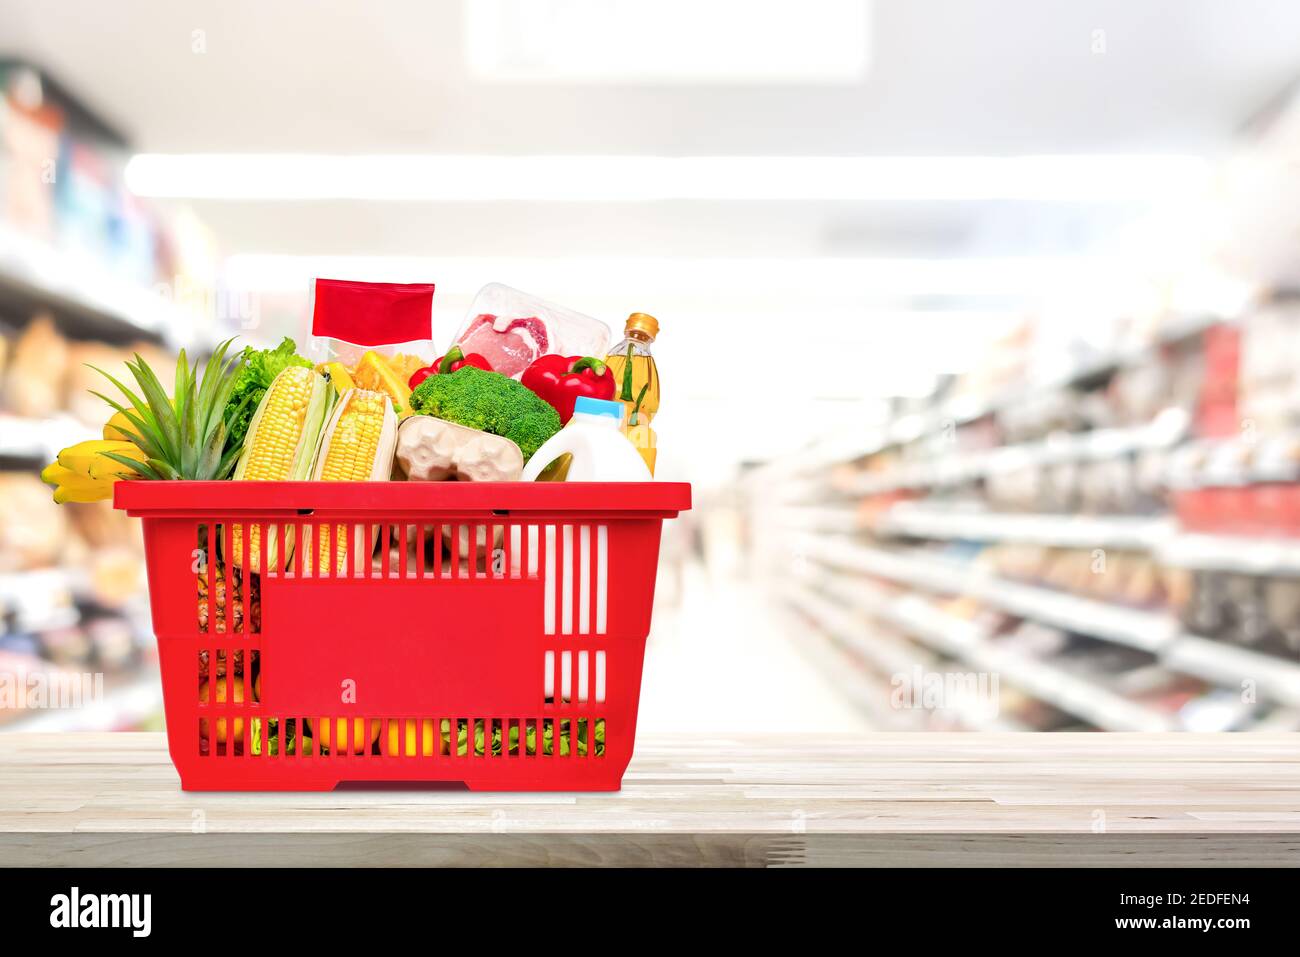 Cibo e generi alimentari in cestino rosso sulla tavola di legno con corridoio del mercato supermarket sfocato in background Foto Stock